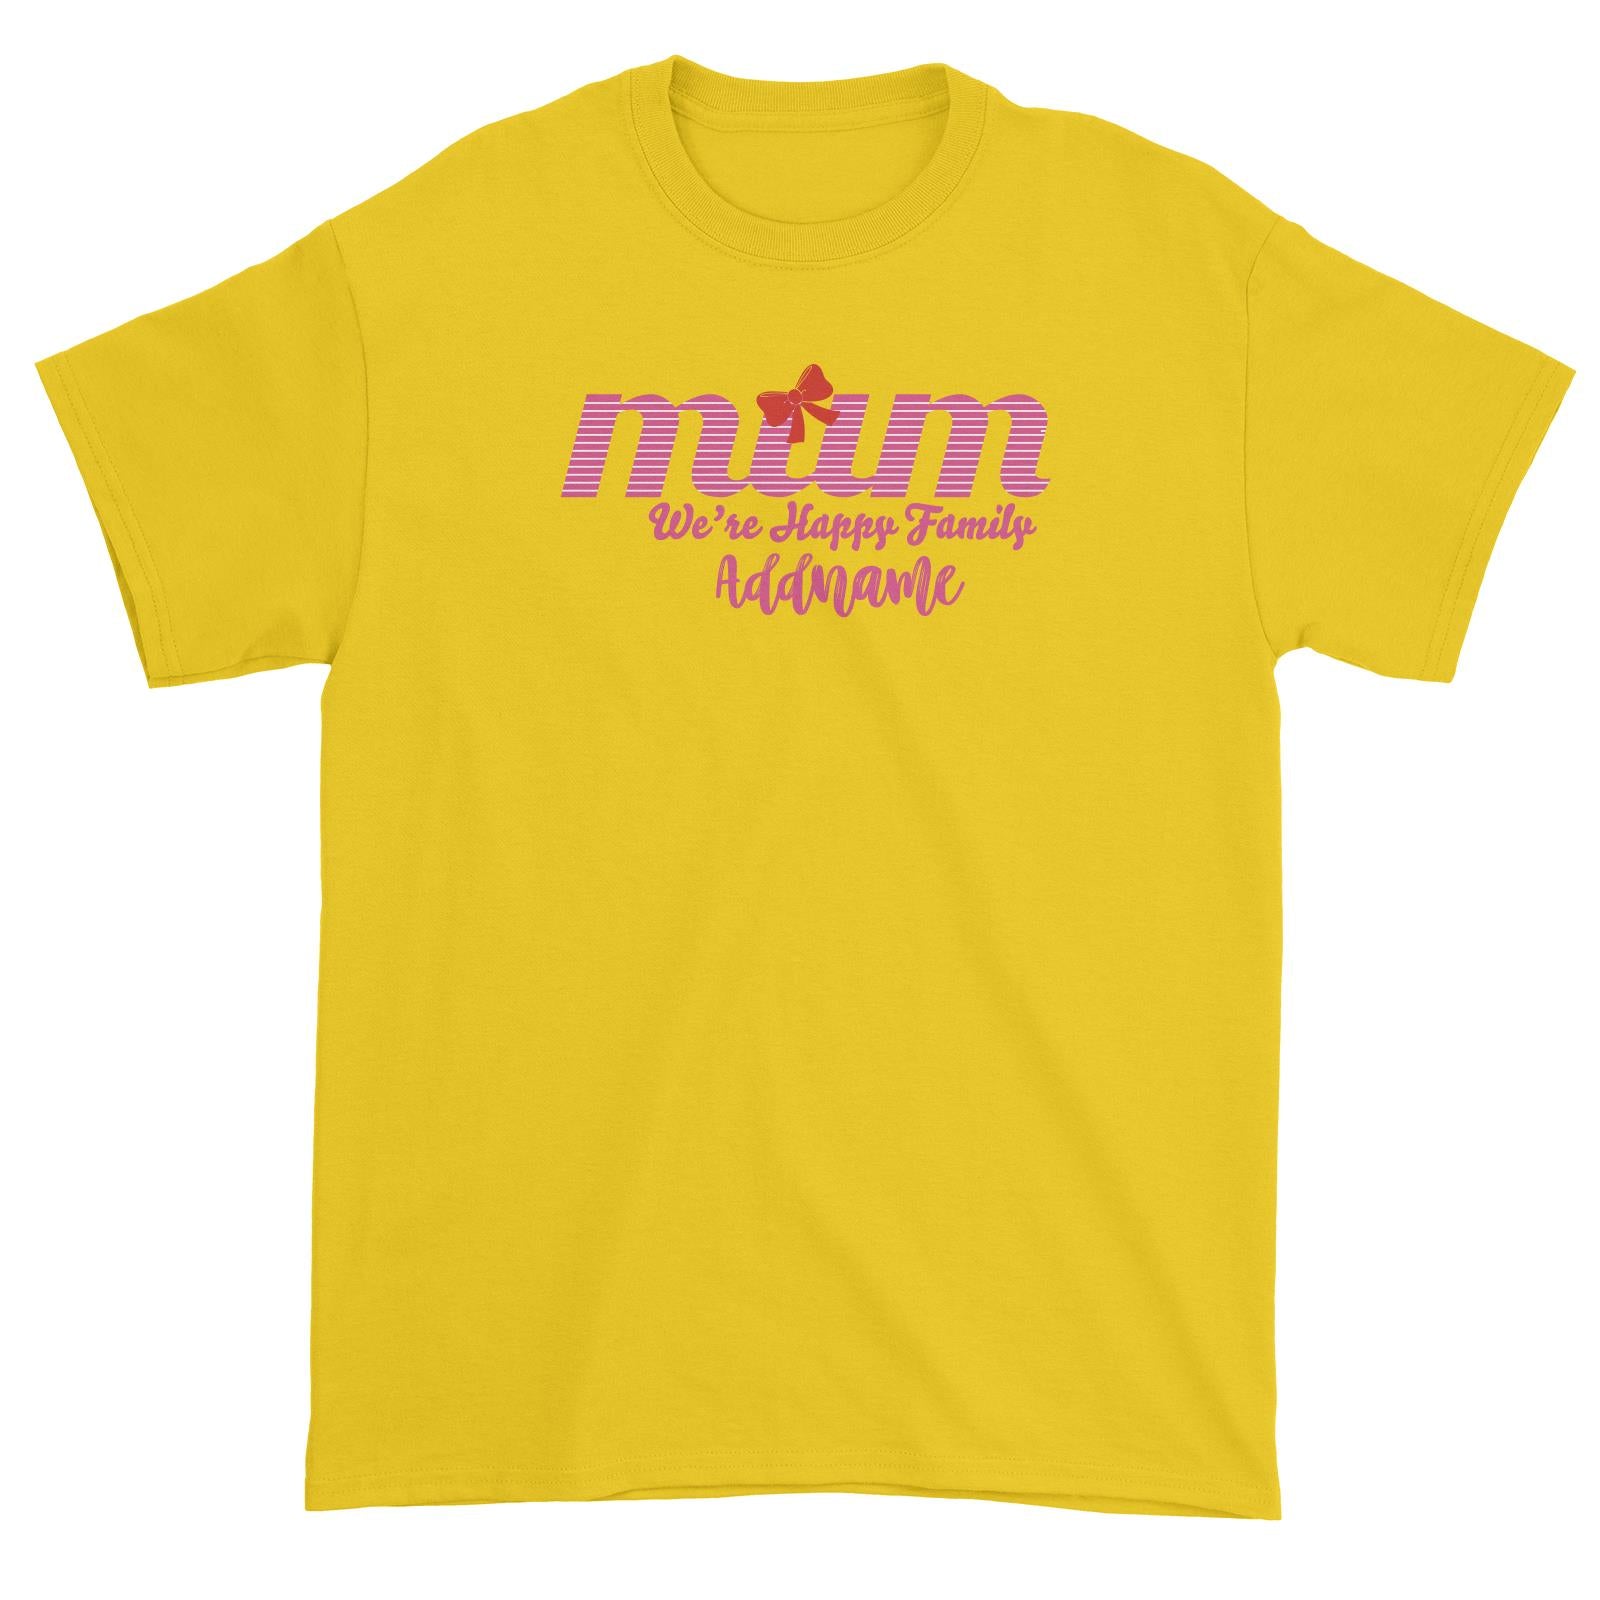 Mum We Are Happy Family Unisex T-Shirt